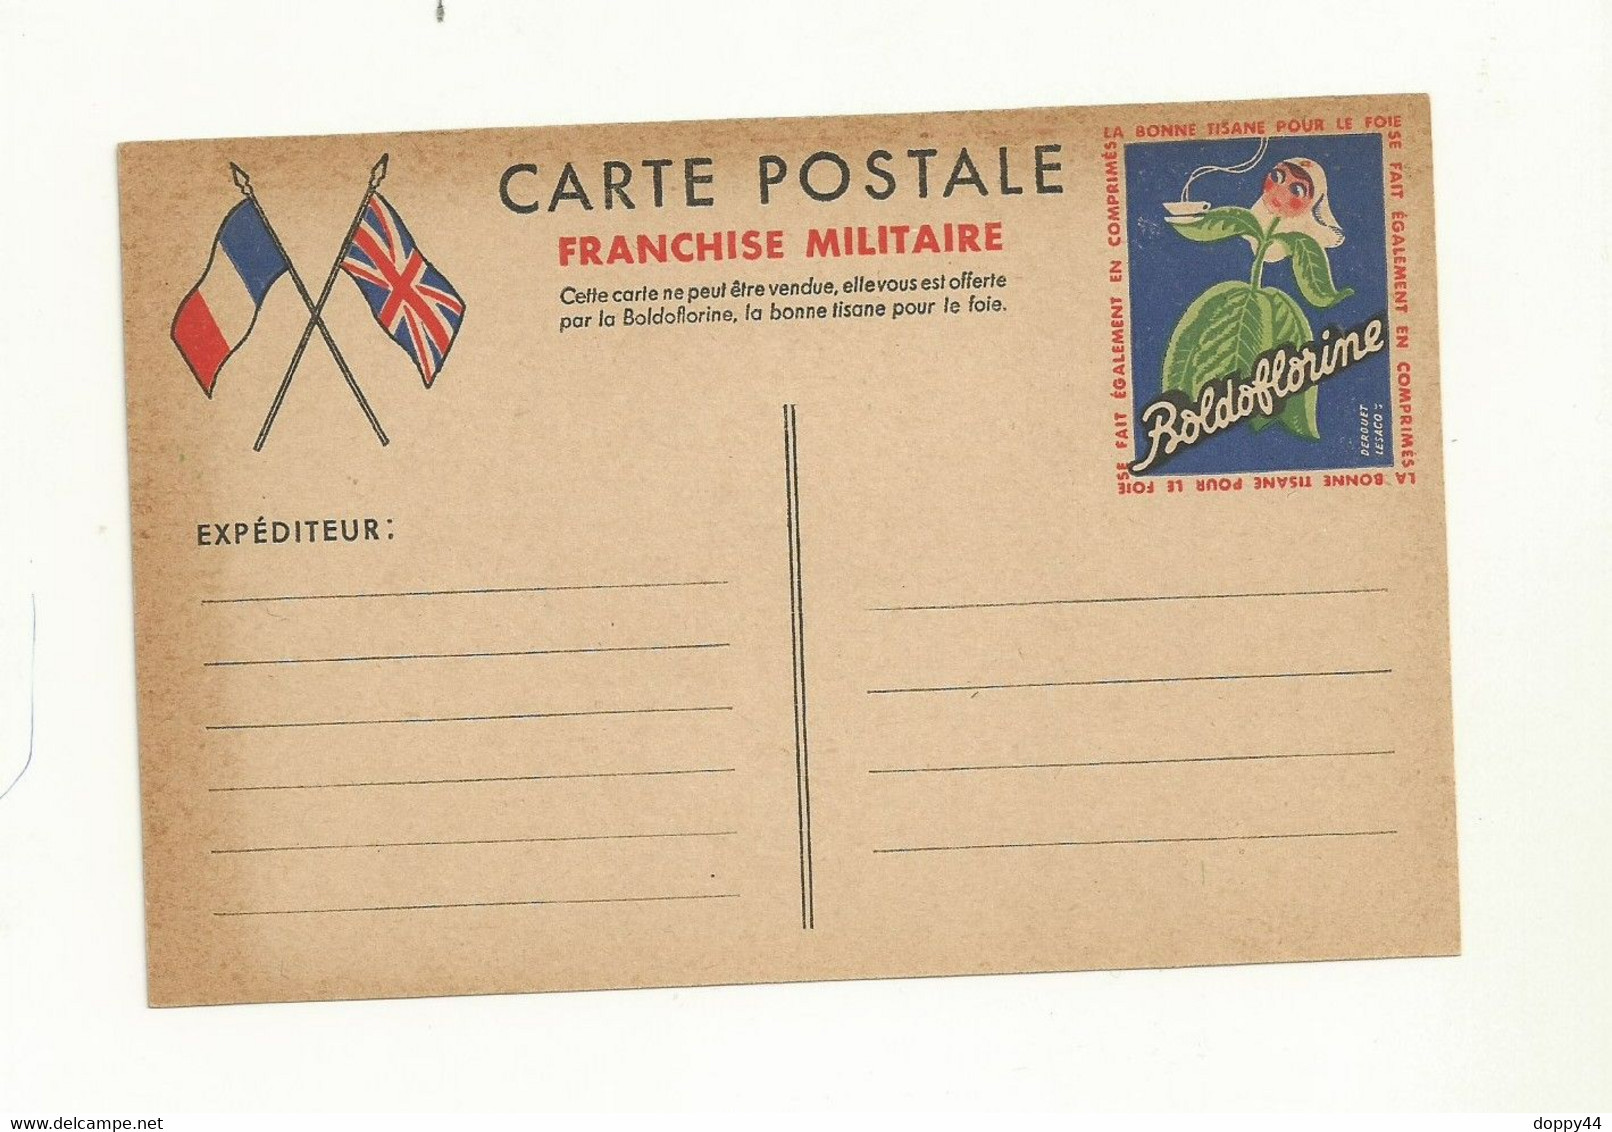 CARTE DE FRANCHISE MILITAIRE PUBLICITAIRE ( BOLDOFLORINE). Neuve Avec Rousseur Sur Les Cotés) - Official Stationery